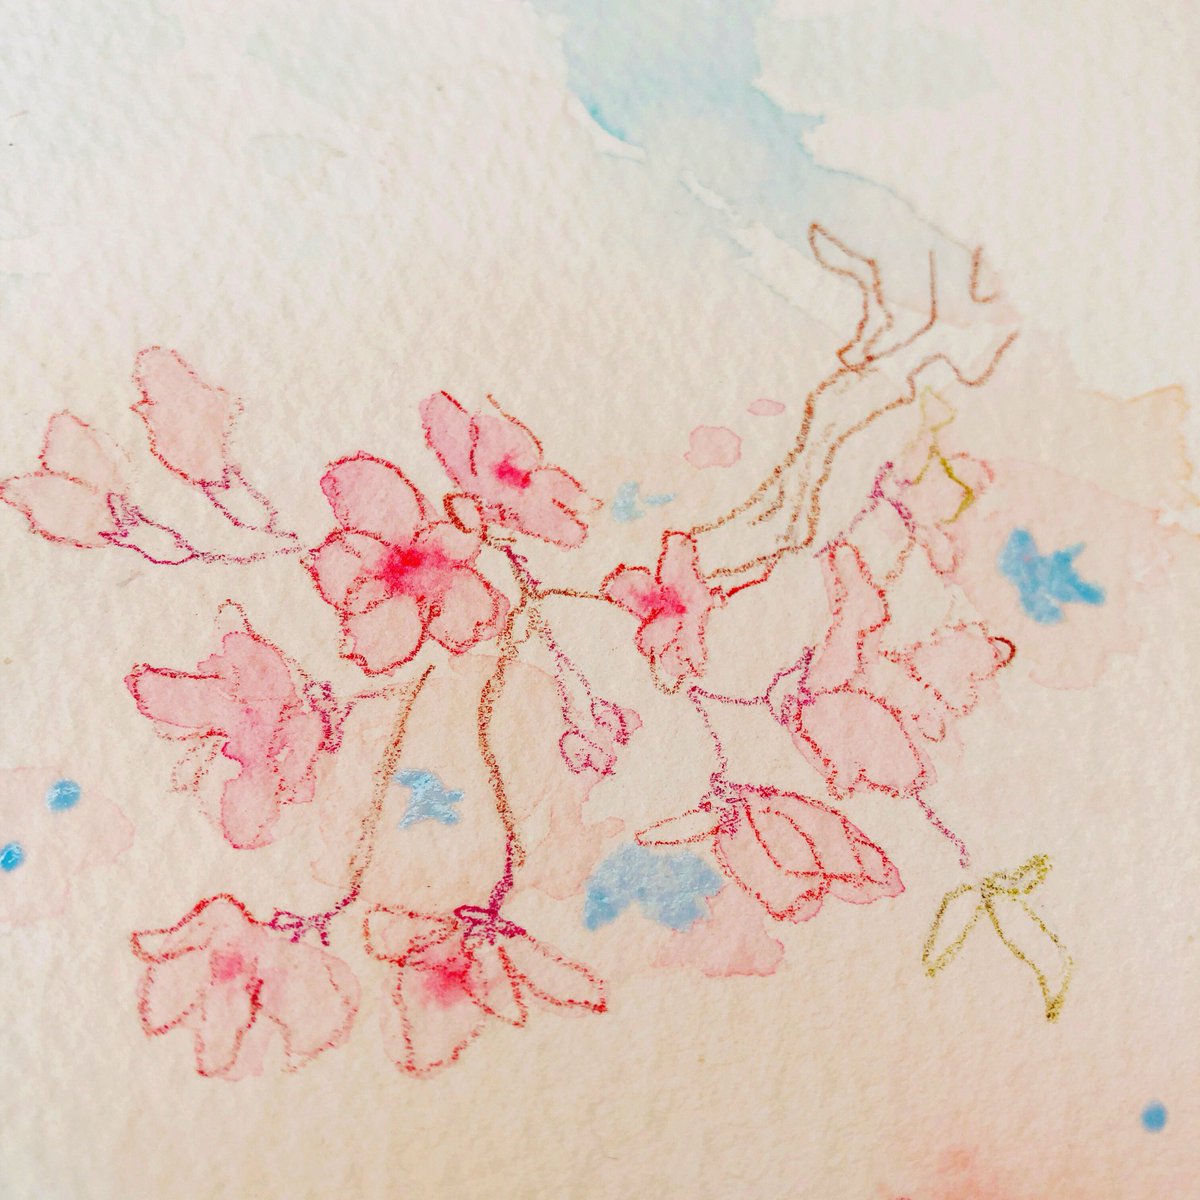 まめこ 5 8 土 イラ集通販しますー A Twitter ローズマダージェニュインとスカーレットレーキで桜に色をのせる Pwcのローズマダージェニュインはほんと透明に透き通って綺麗に輝くから好き ほんのり甘い香りで癒し効果抜群 スカーレットレーキは大好きな春蔵絵の具を